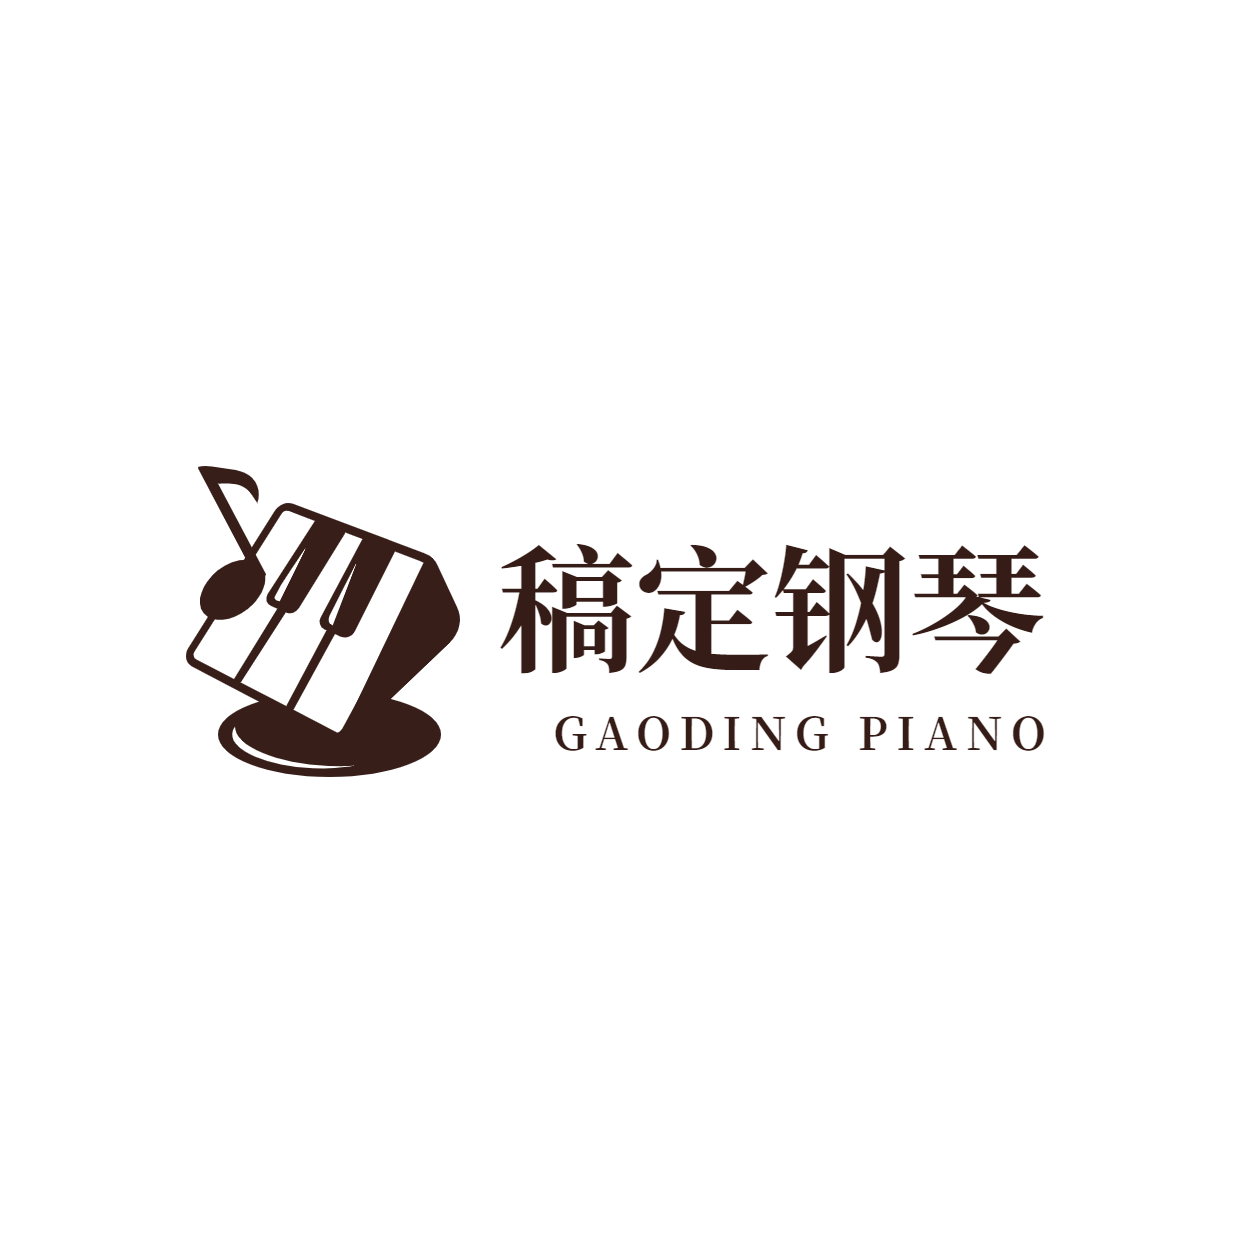 教育培训机构钢琴班logo